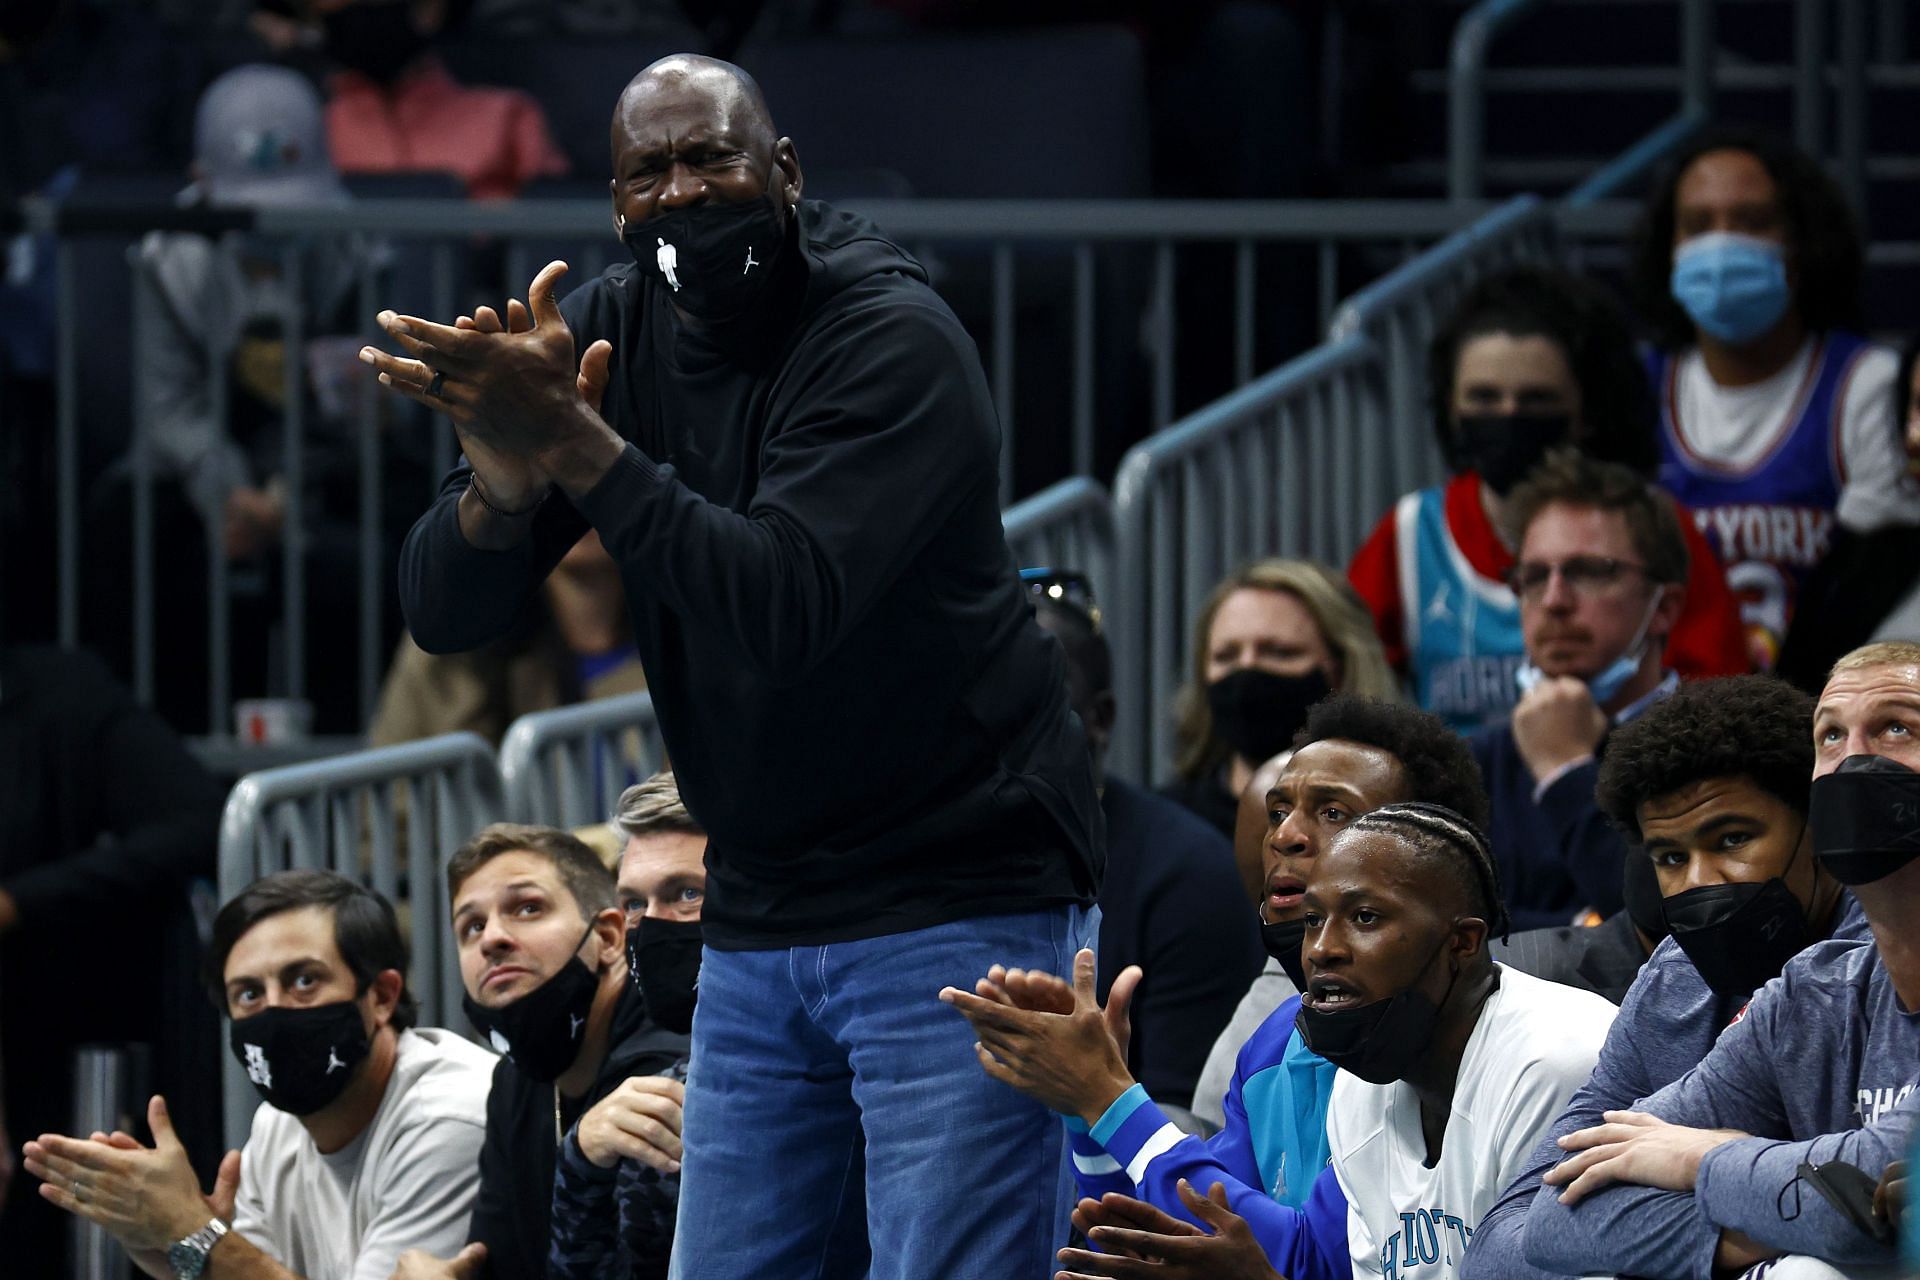 Charlotte Hornets owner Michael Jordan sitting courtside